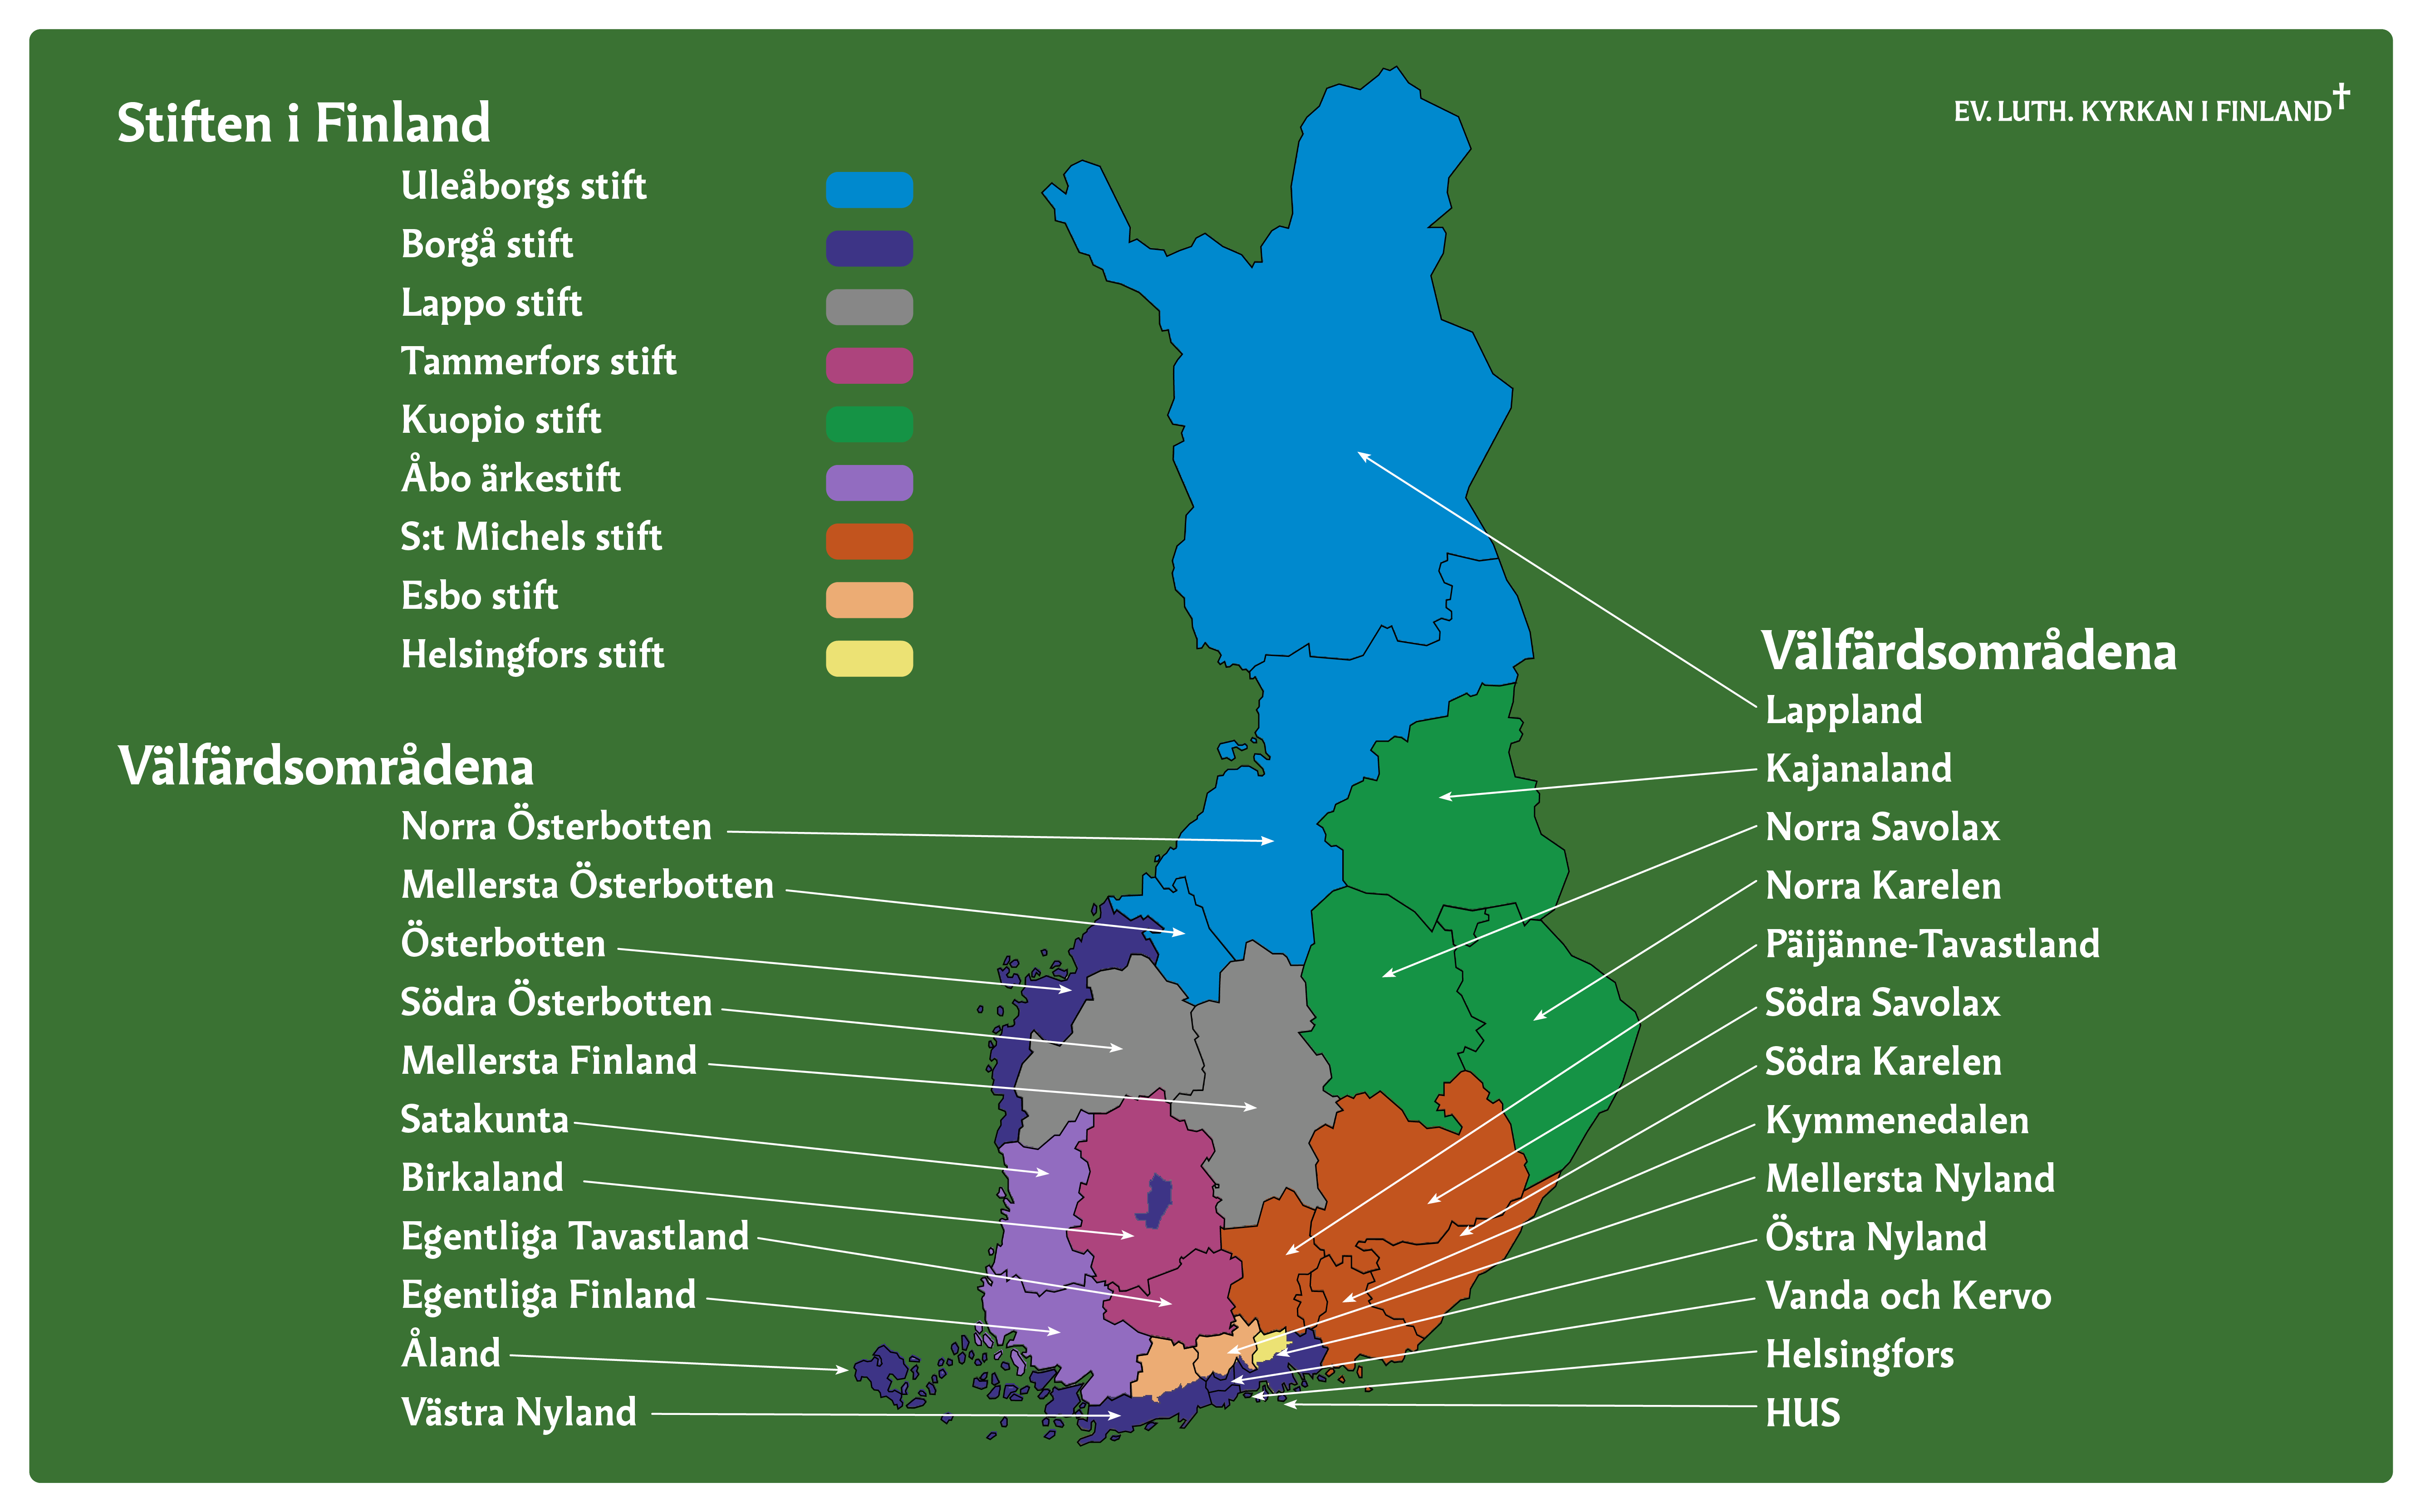 Finlandskarta som markerar gränserna för Evangelisk-lutherska kyrkans stift och välfärdsområdena.